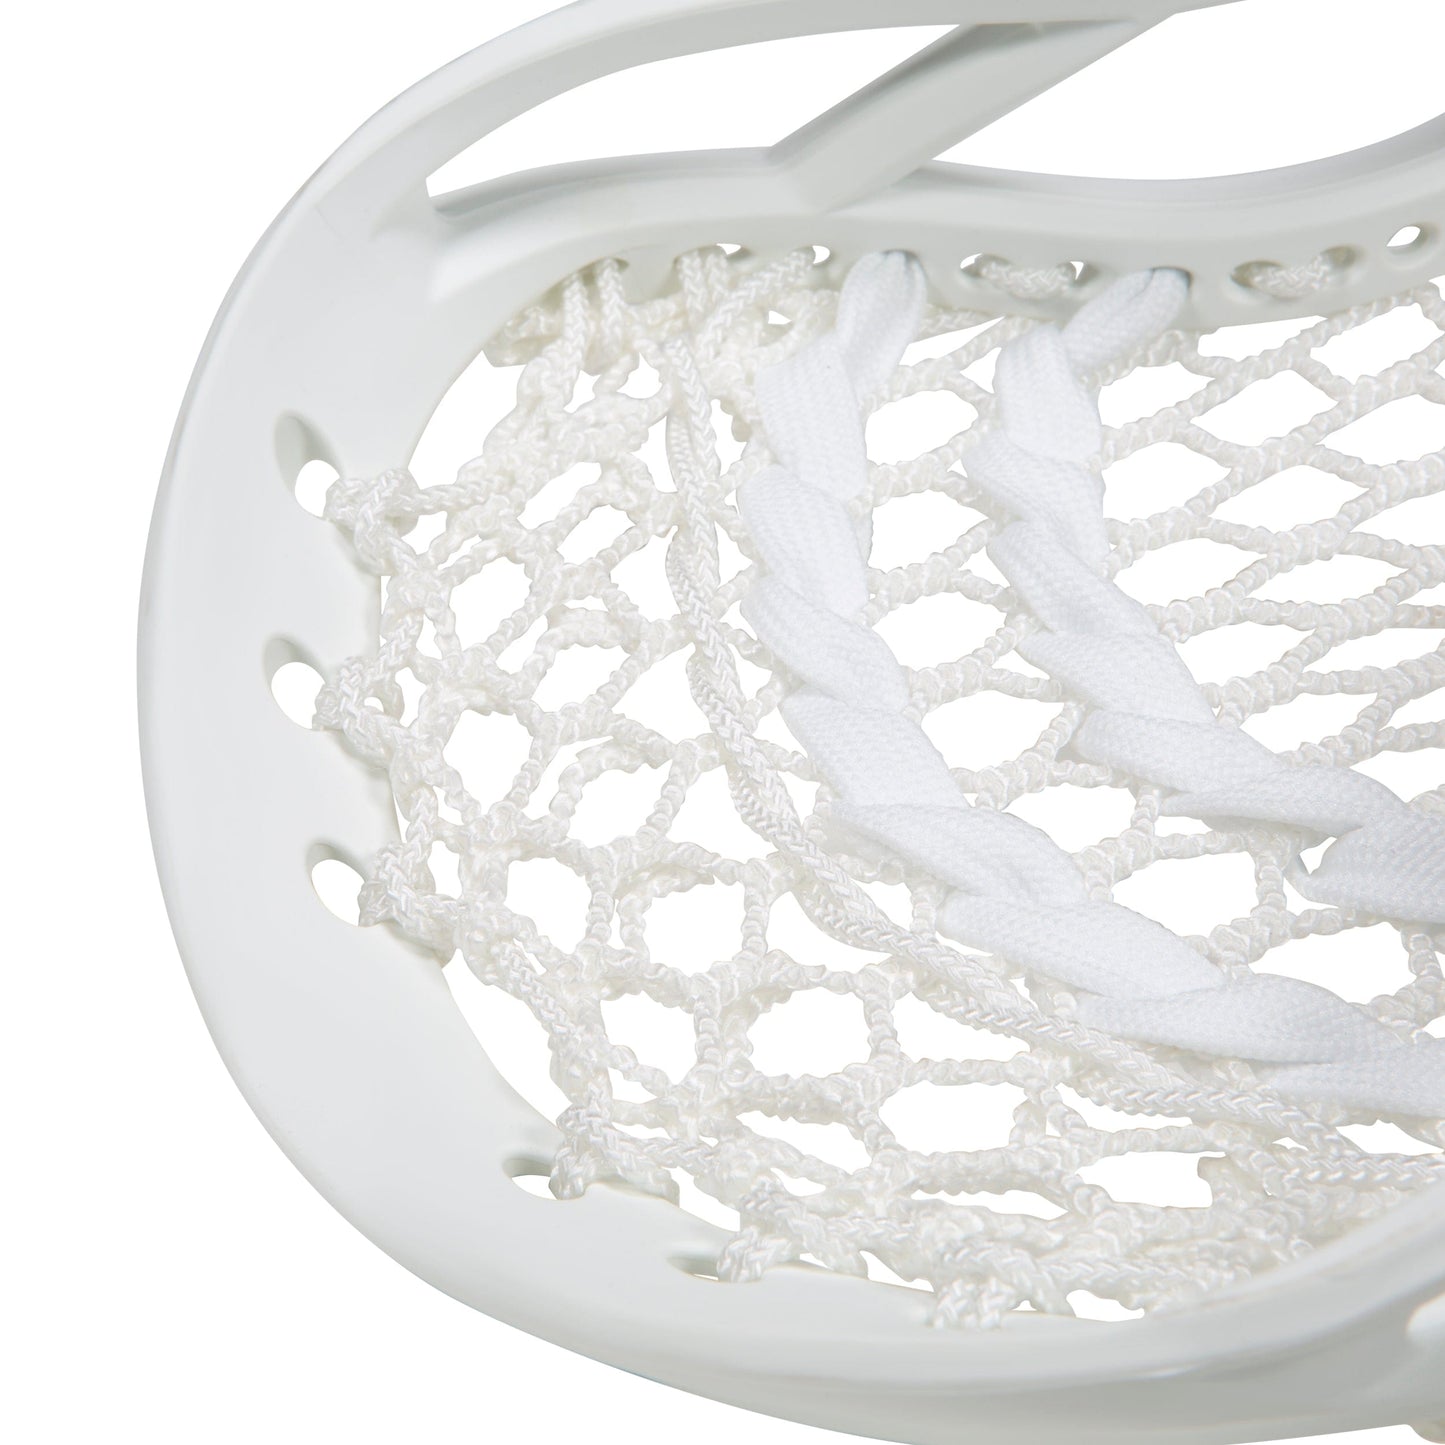 Titanium Pro Universal Complete Lacrosse Stick | 30" | Gun Metal/White Signature Lacrosse